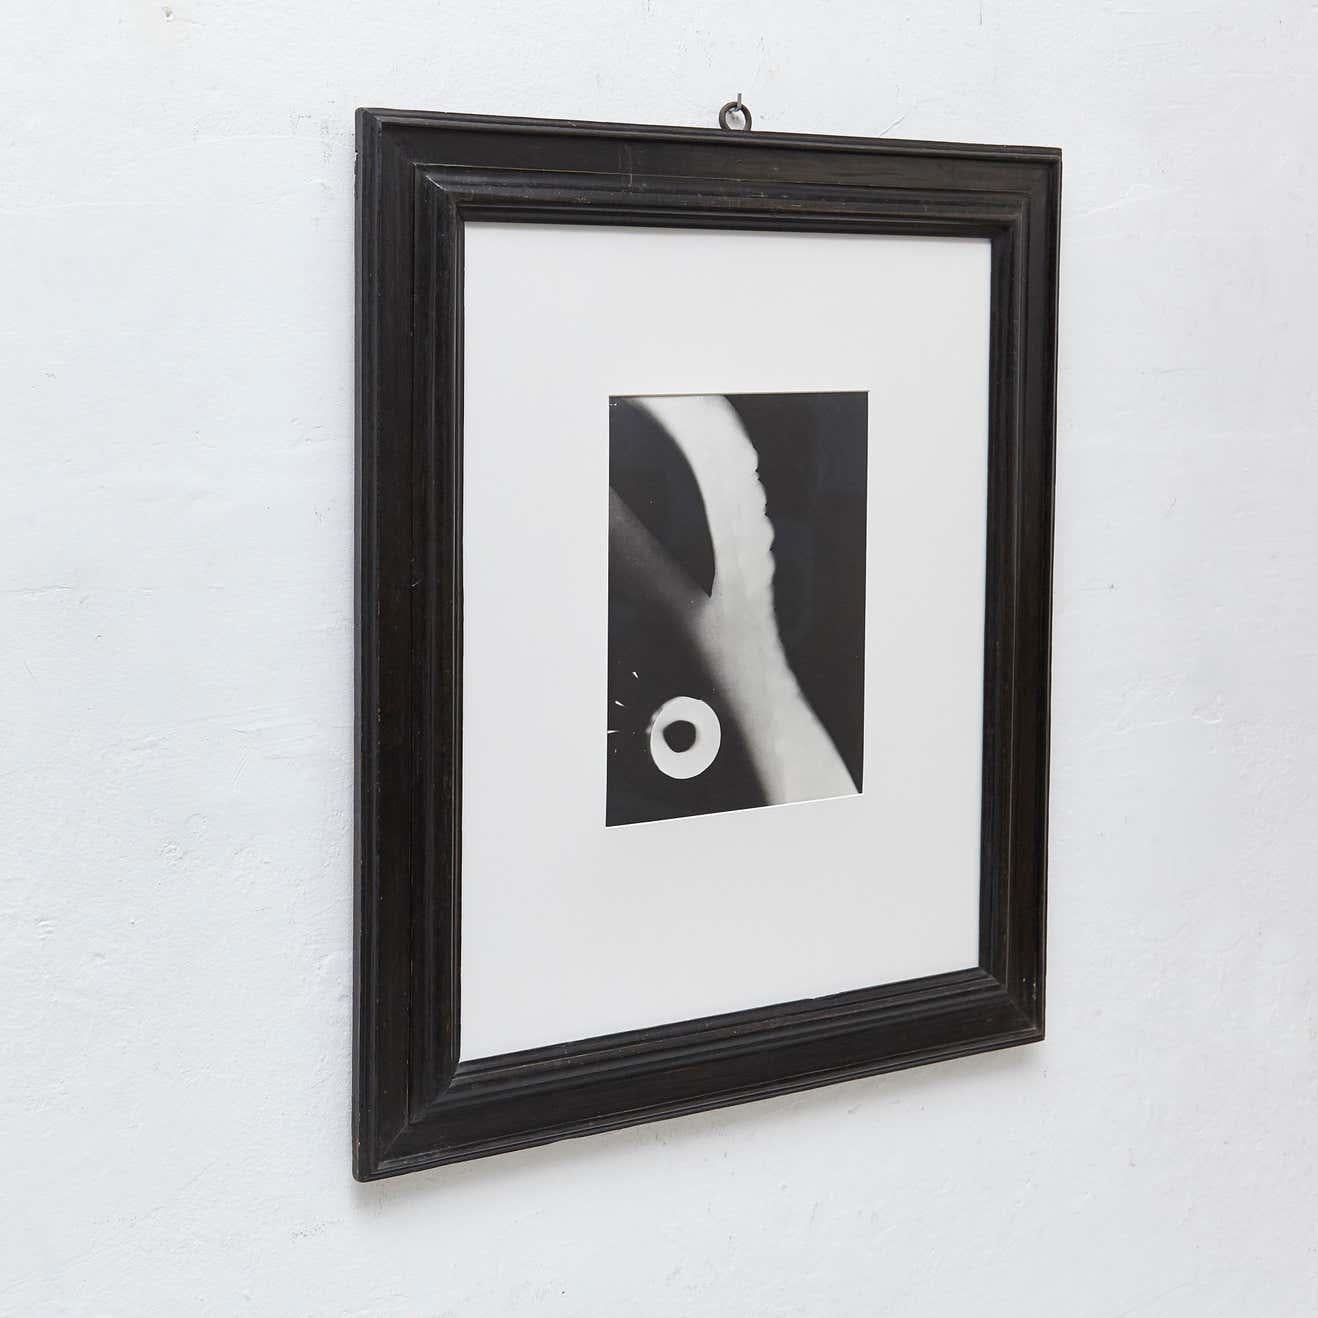 Photographie de László Moholy-Nagy.

Un tirage posthume à partir du négatif original, vers 1973.
Estampillé par Foto Moholy-Nagy et la Galerie Khlim.

En bon état d'origine.

László Moholy-Nagy (1895-1946) était un peintre et un photographe hongrois